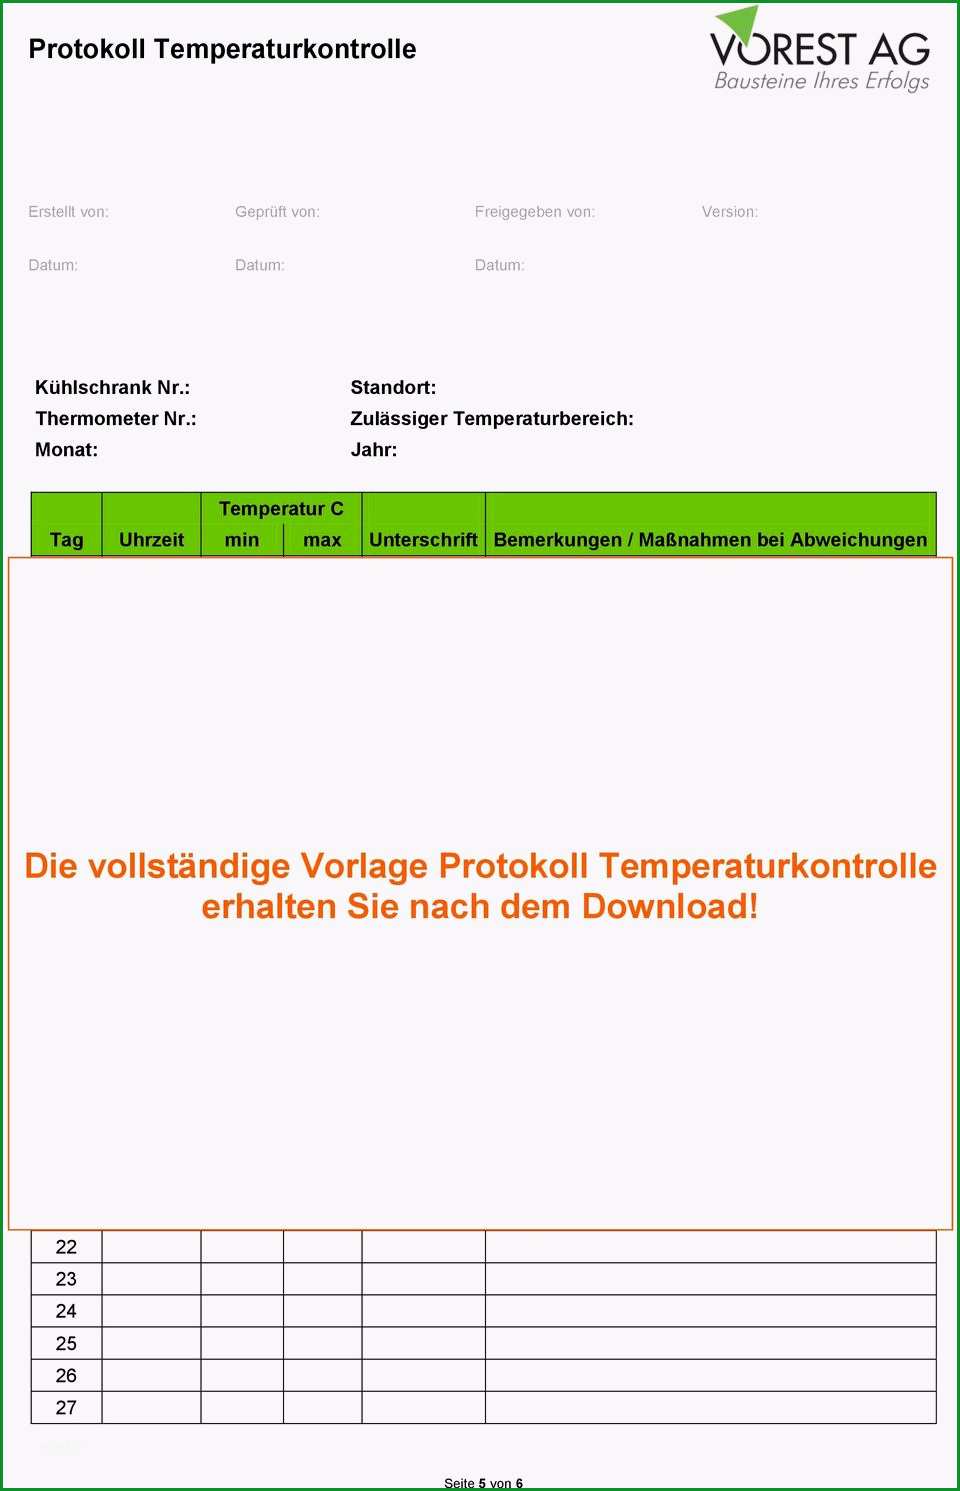 Vorschau pdf protokoll temperaturkontrolle